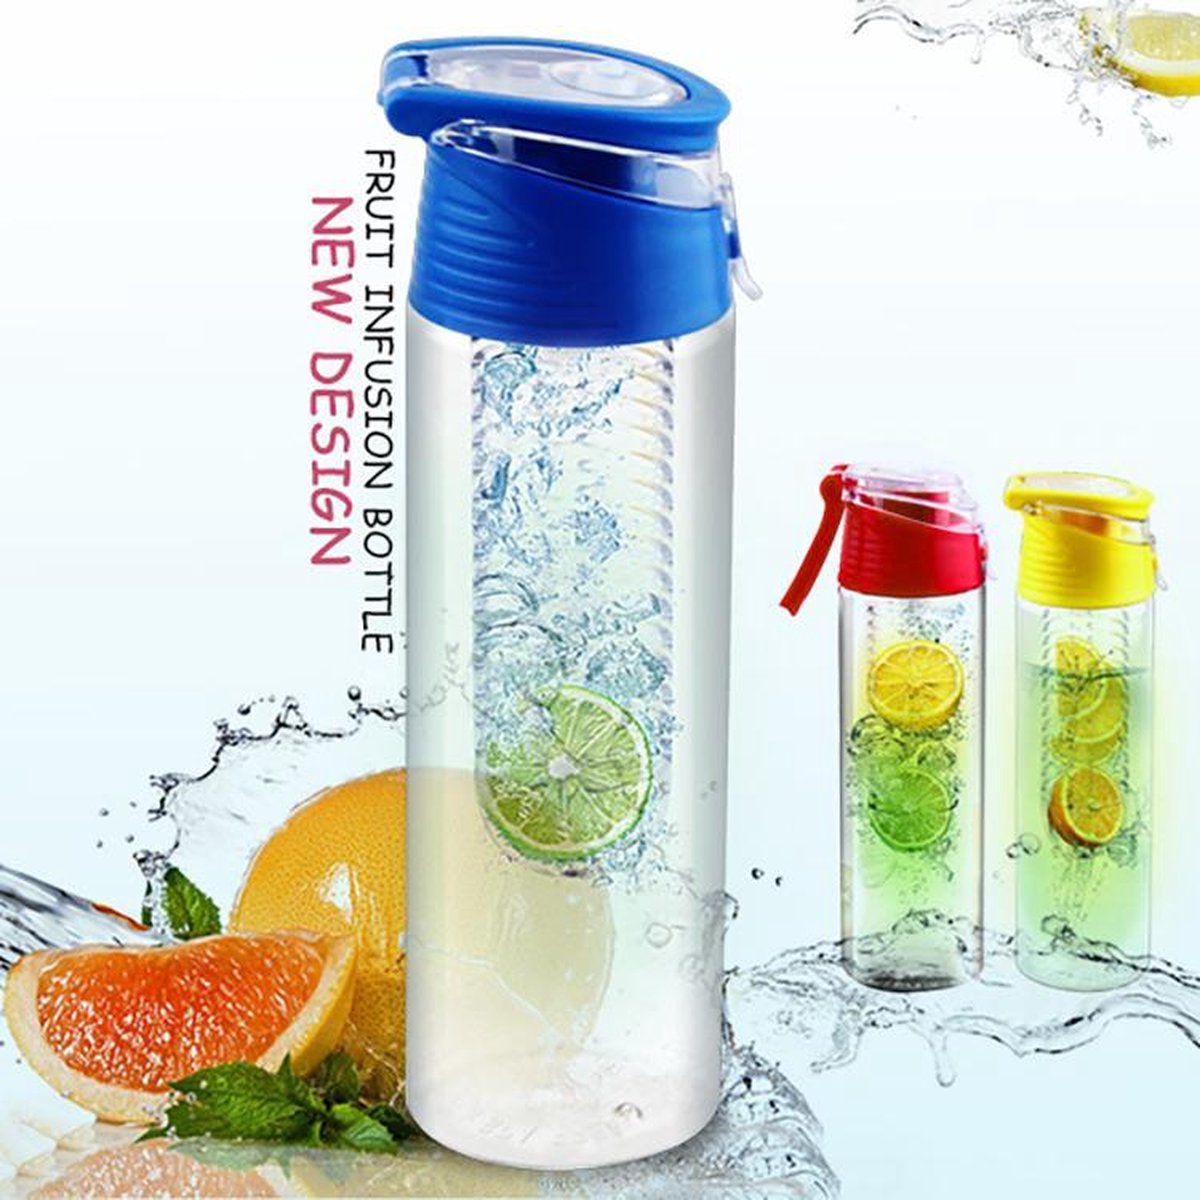 FIGURETTA waterfles met infuser | inhoud 0.7 ltr | BPA-vrij | blauw